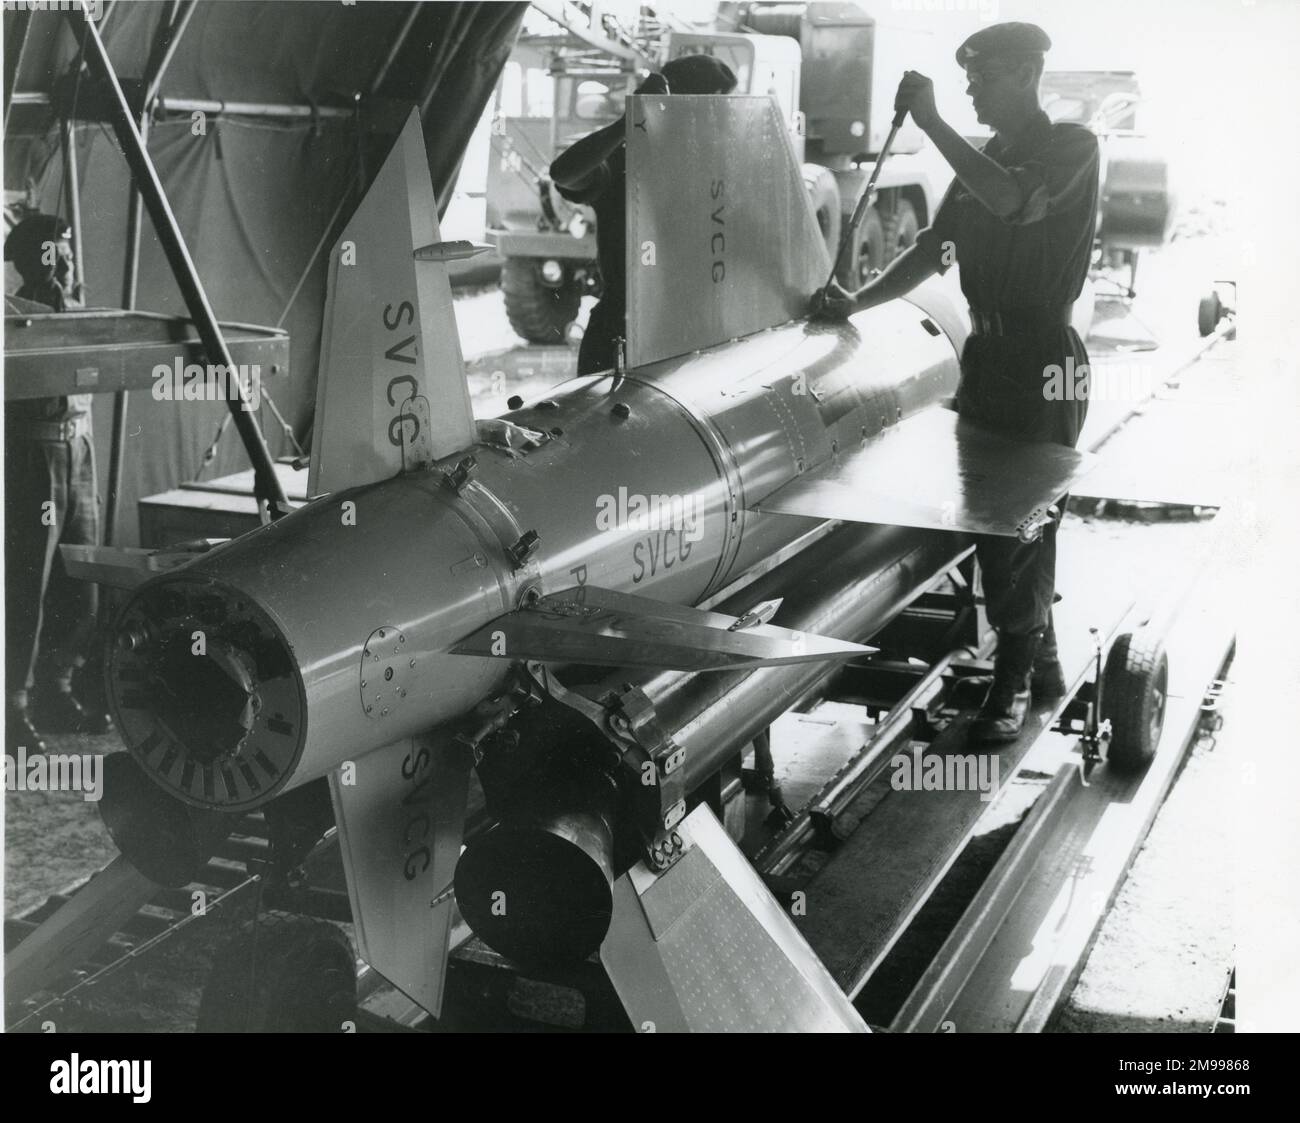 Le 32nd Régiment d'armes guidées de l'Artillerie royale de Ty Croes, au nord du pays de Galles, travaille sur le missile guidé surface-air d'oiseau-tonnerre électrique anglais à l'assemblée de campagne et au point d'essai, où le missile est contrôlé et testé à son arrivée pour être tiré,16 juillet 1961. Banque D'Images